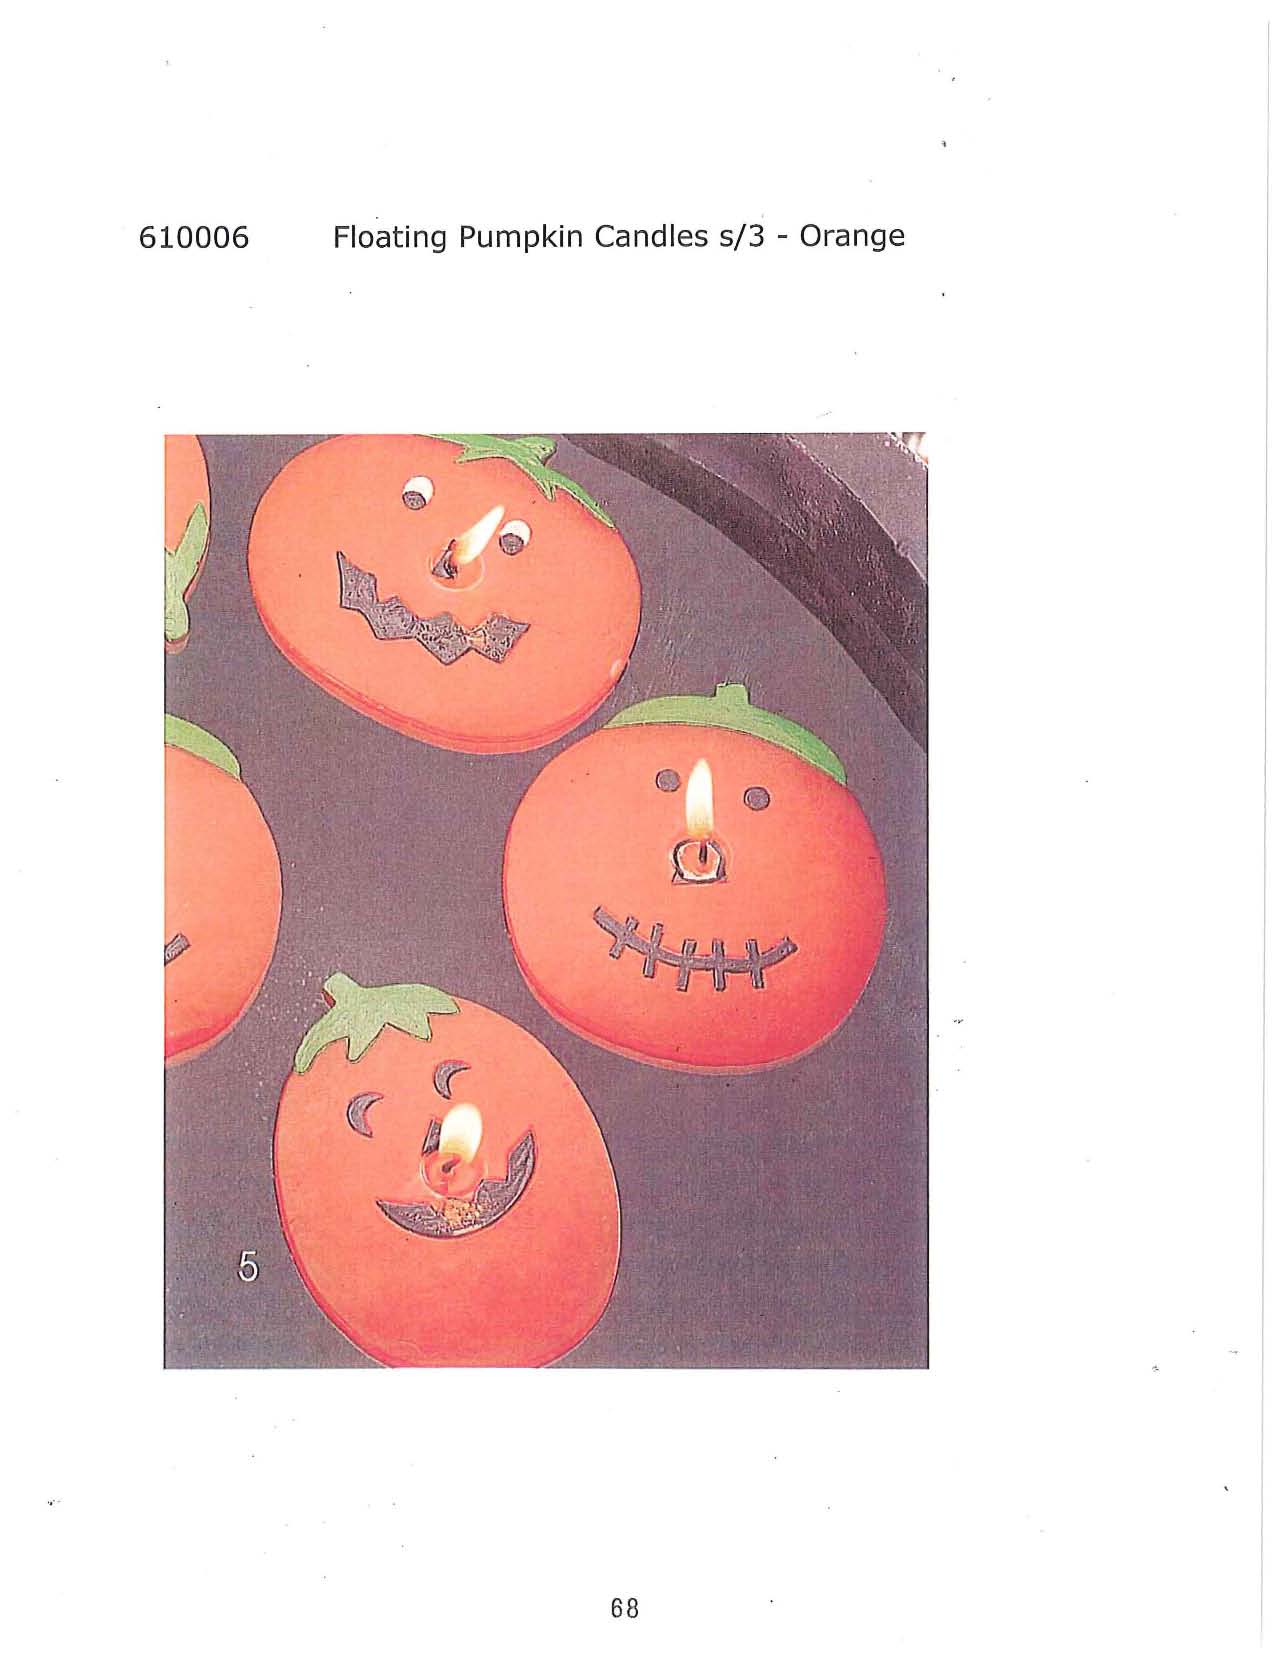 Floating Pumpkin Candle s/3 - Orange